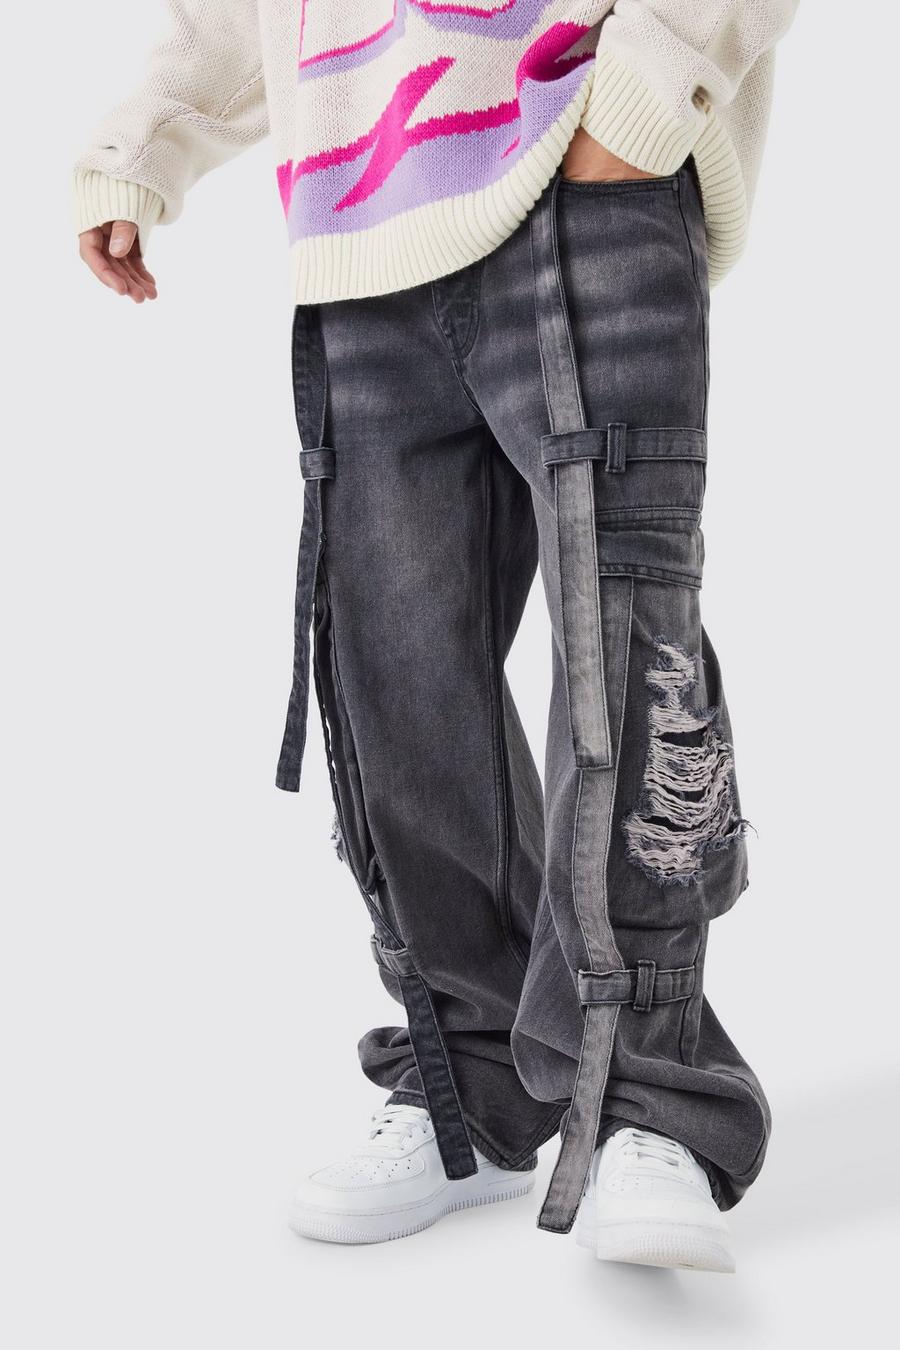 Lockere zerrissene Cargo-Jeans mit Riemchen-Detail, Purple